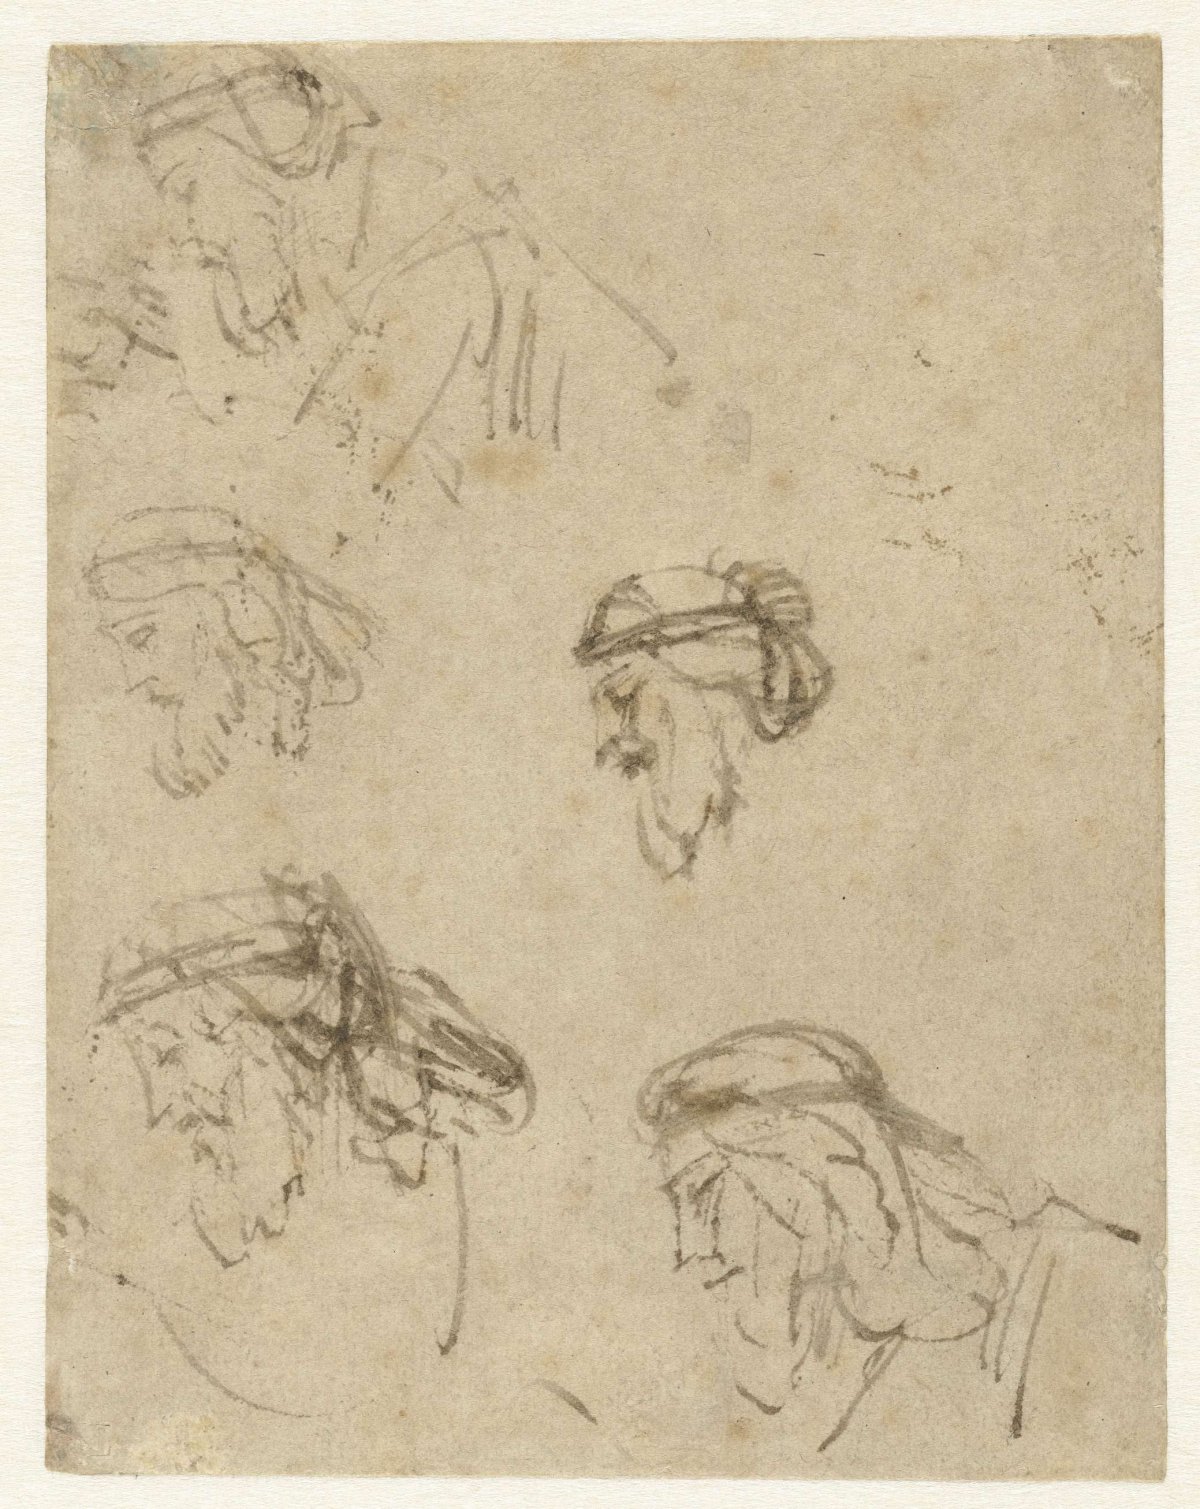 Five Studies of Haman’s Head, Rembrandt van Rijn, c. 1655 - c. 1660